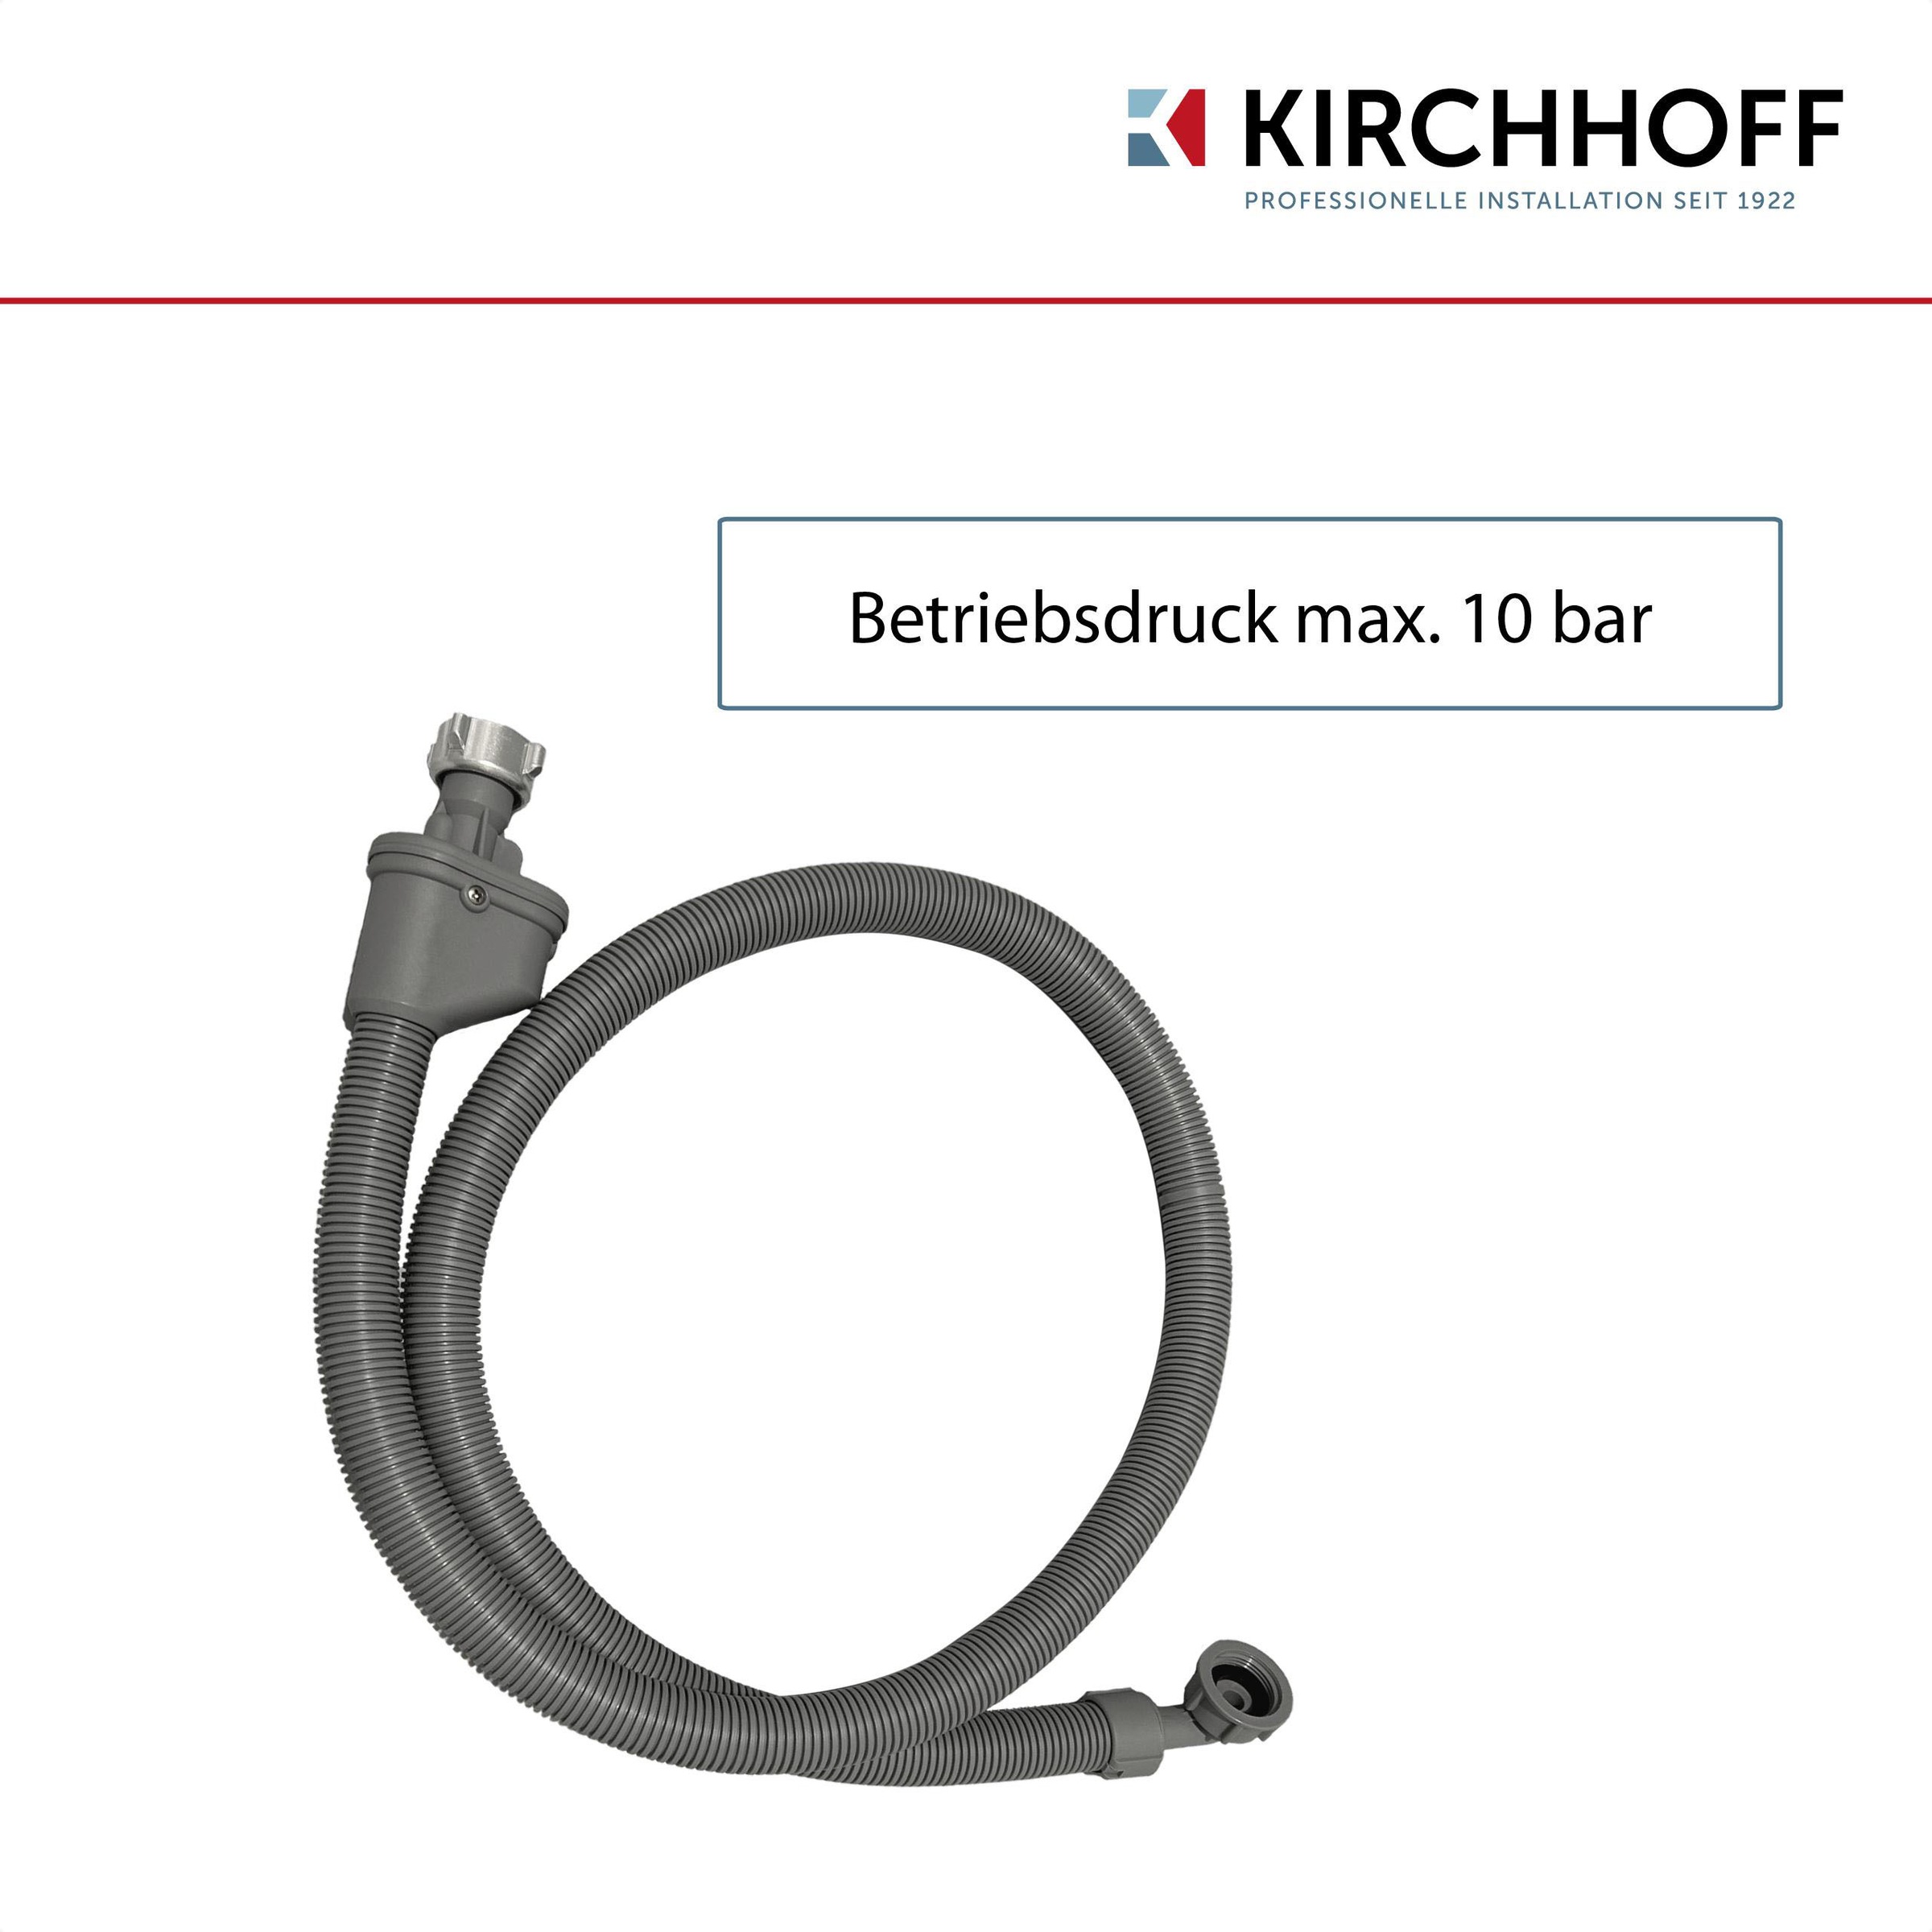 Kirchhoff Zulaufschlauch, Sicherheits-Zulaufschlauch, 3/4"IG x 2 m x 3/4"IG, 10bar/90°C